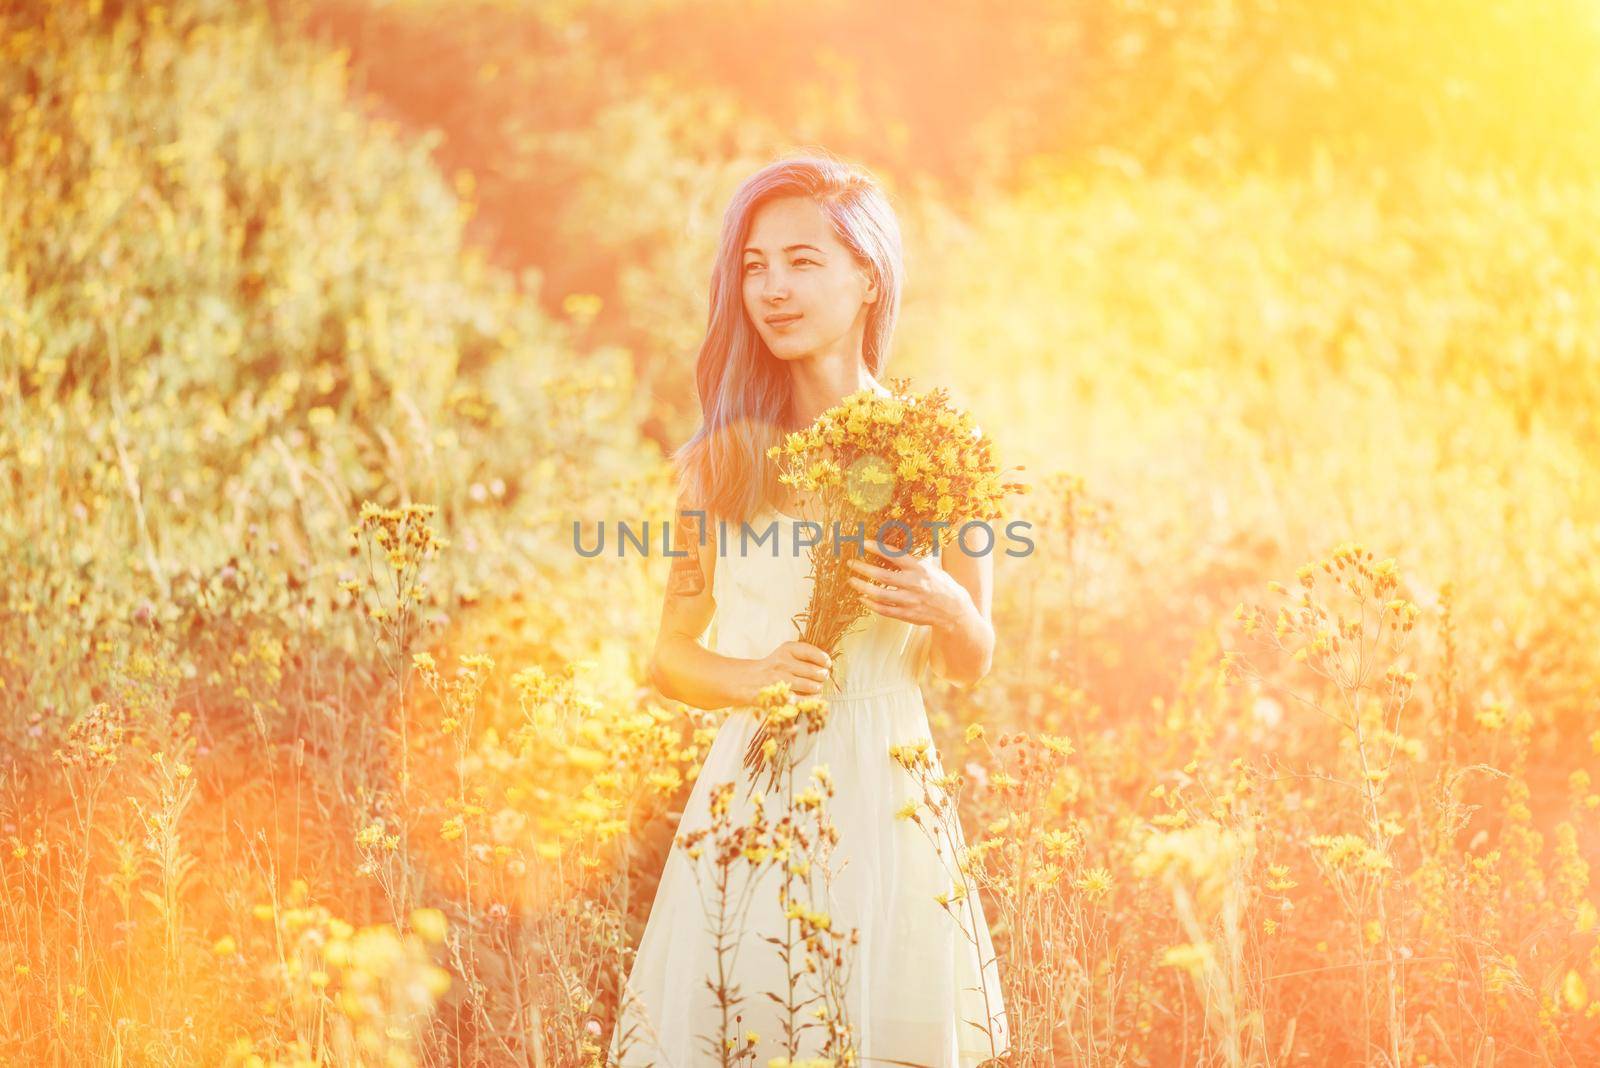 Attractive girl walking on flower field by alexAleksei